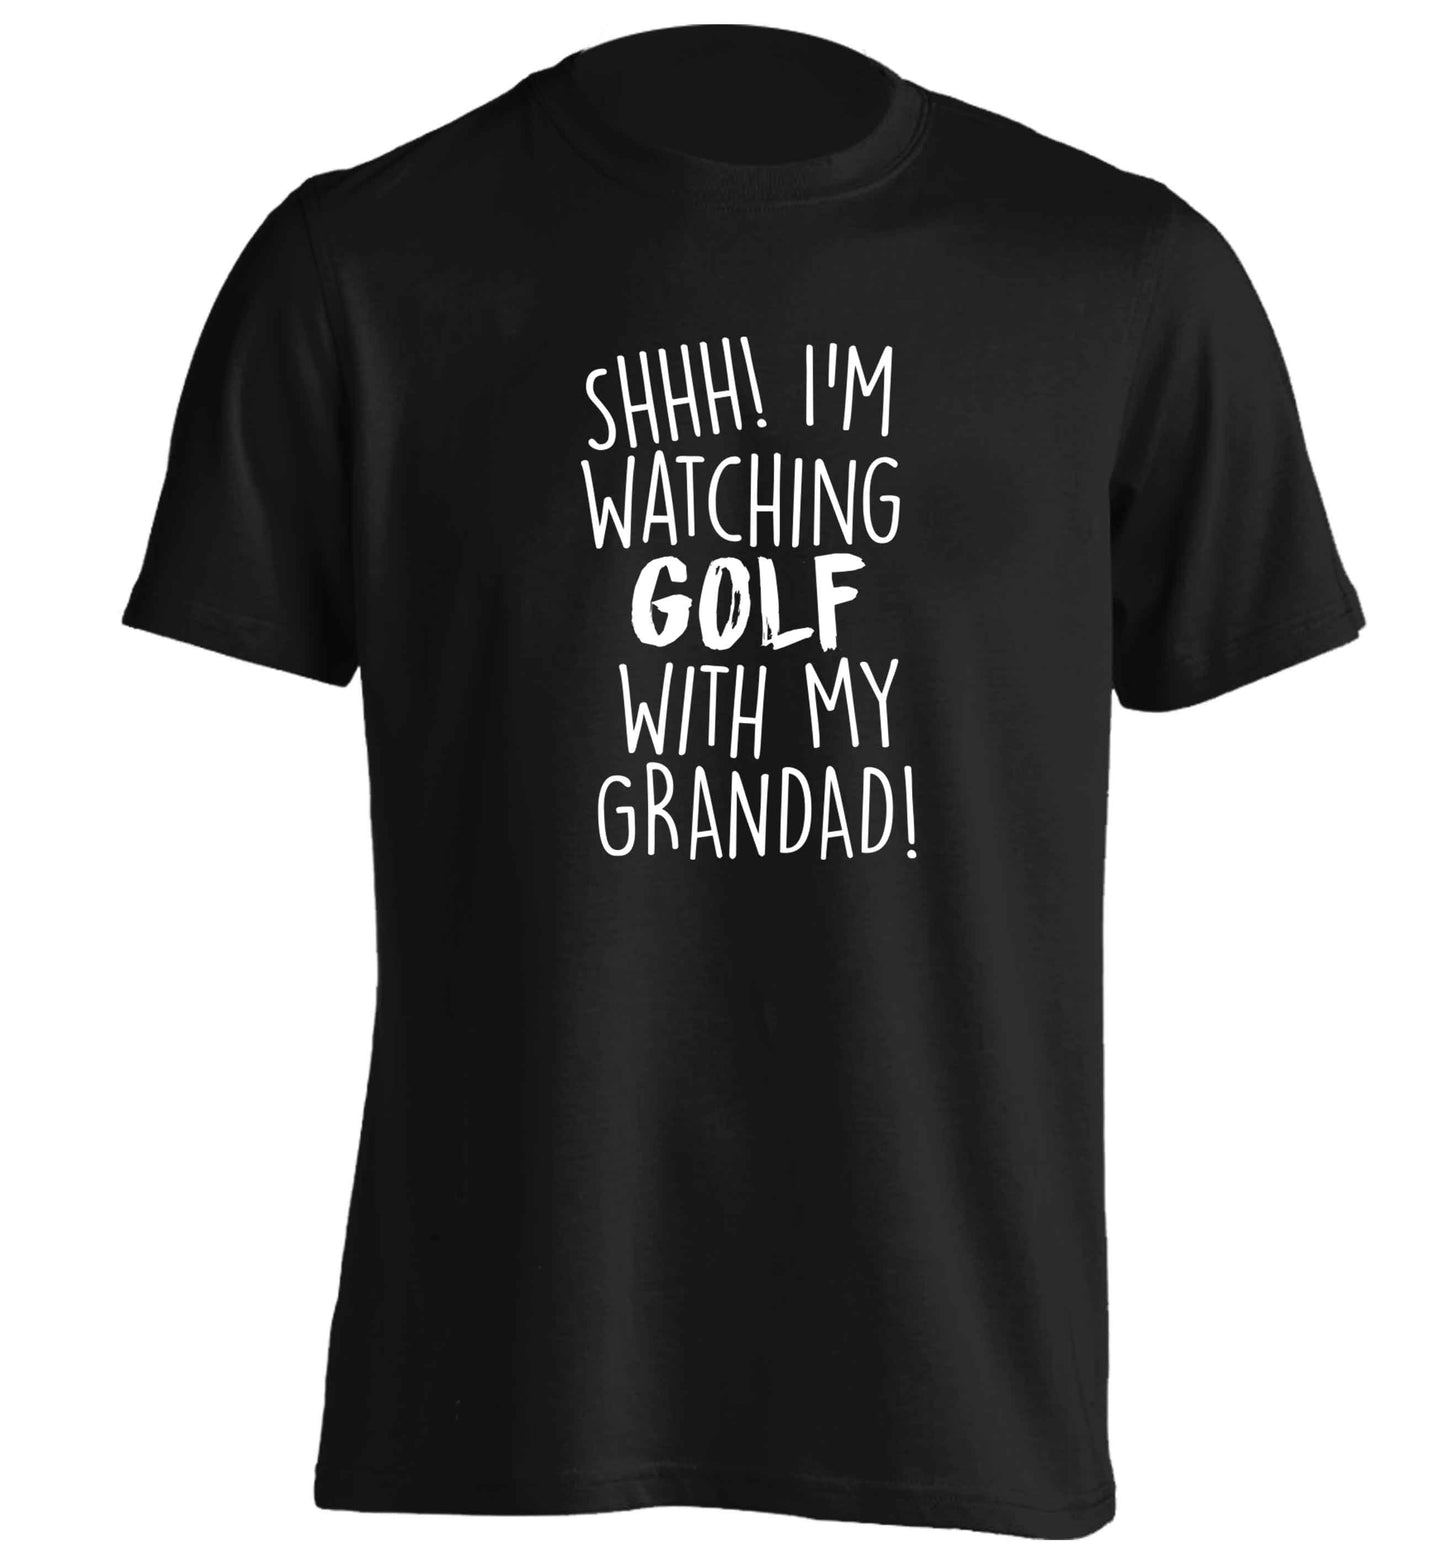 Shh I'm watching golf with my grandad adults unisex black Tshirt 2XL